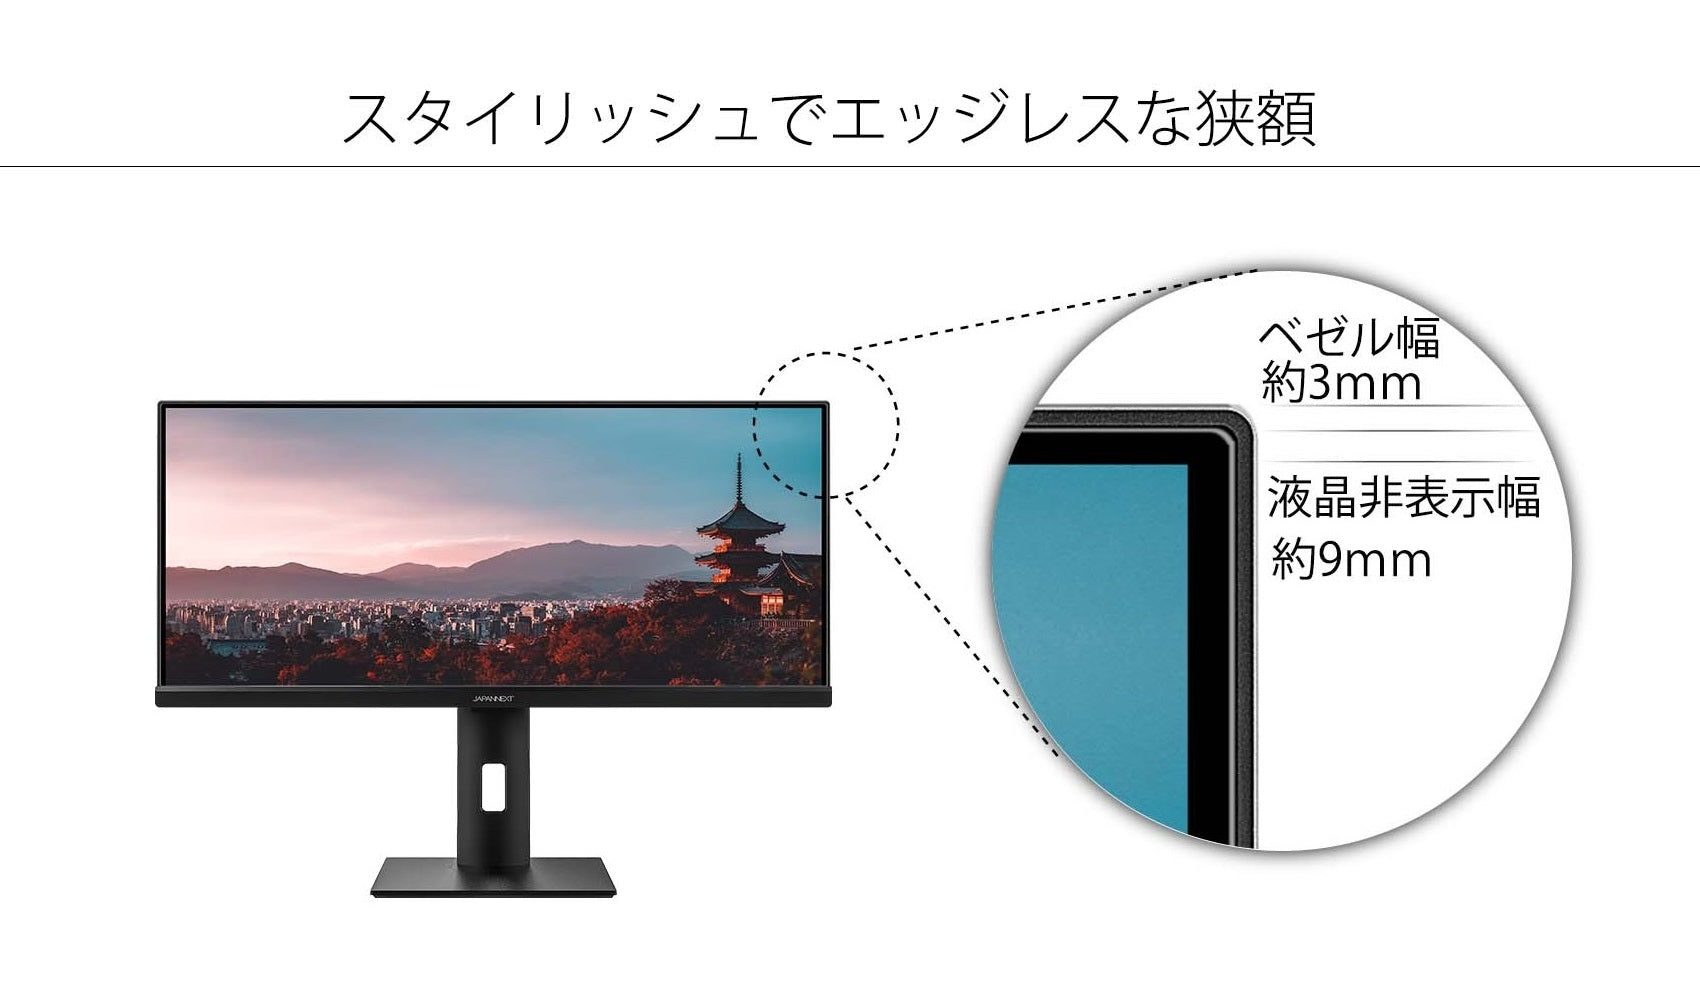 JAPANNEXT 29インチ ワイドFHD(2560 x 1080) モニター